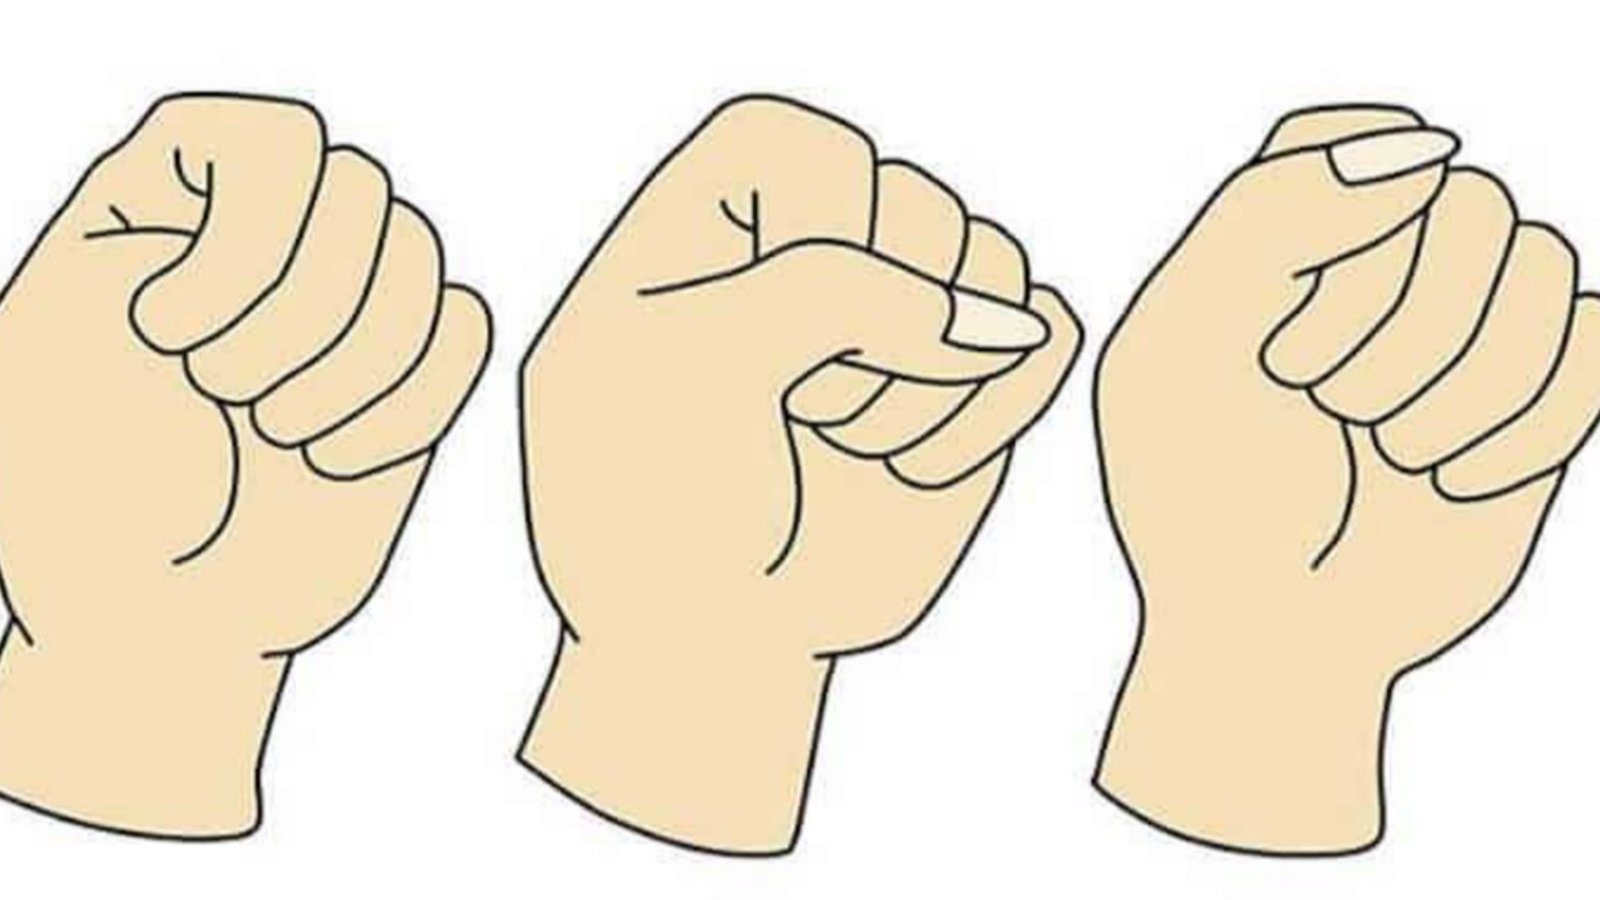 Quand vous fermez la main en poing, cachez-vous votre pouce sous vos doigts? Savez-vous ce que ça veut dire?